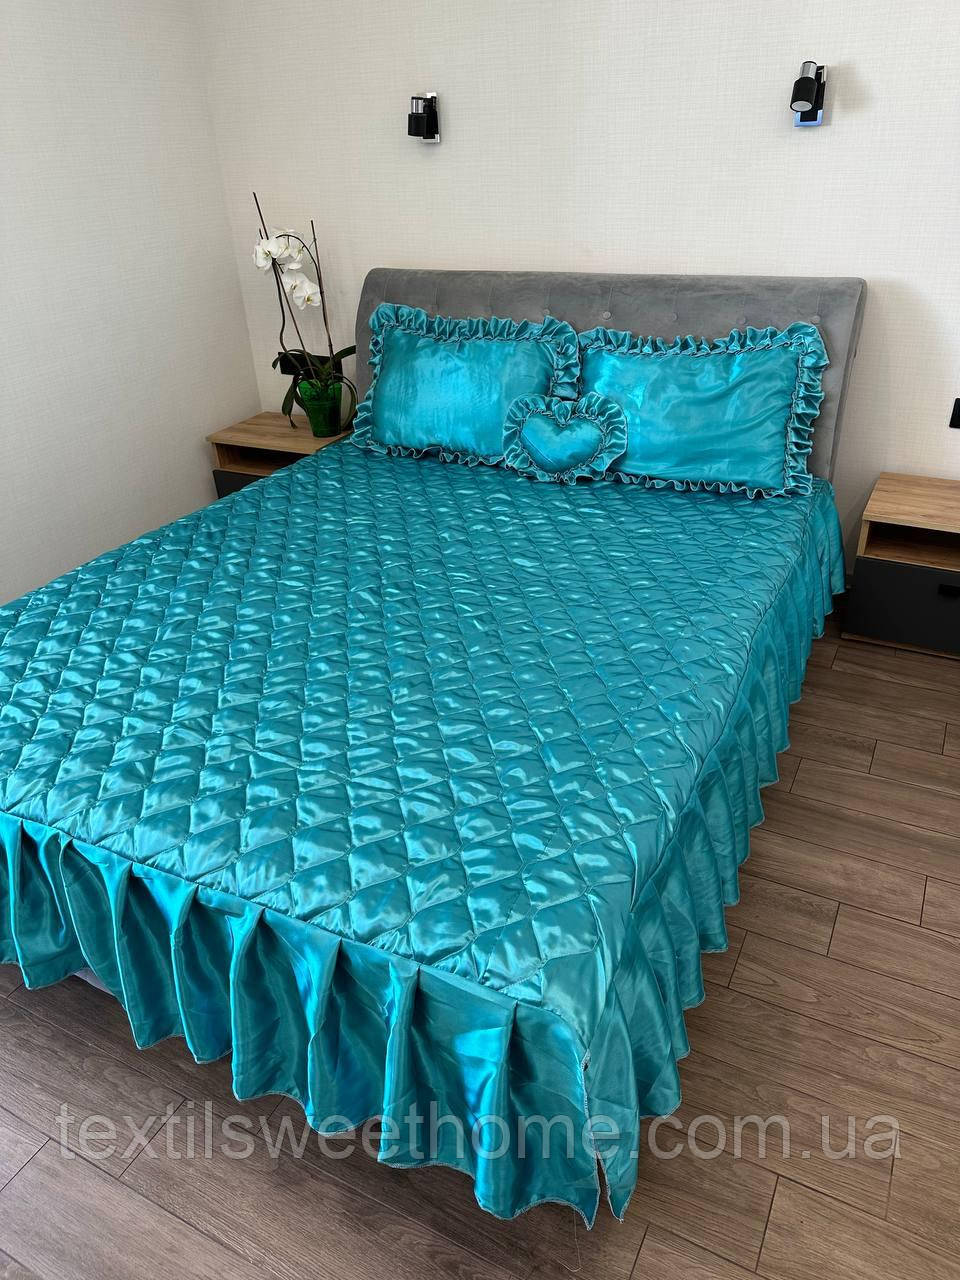 Покривало з атласу для двоспального ліжка з комплектом подушок, набір покривало у темно бірюзовому кольорі